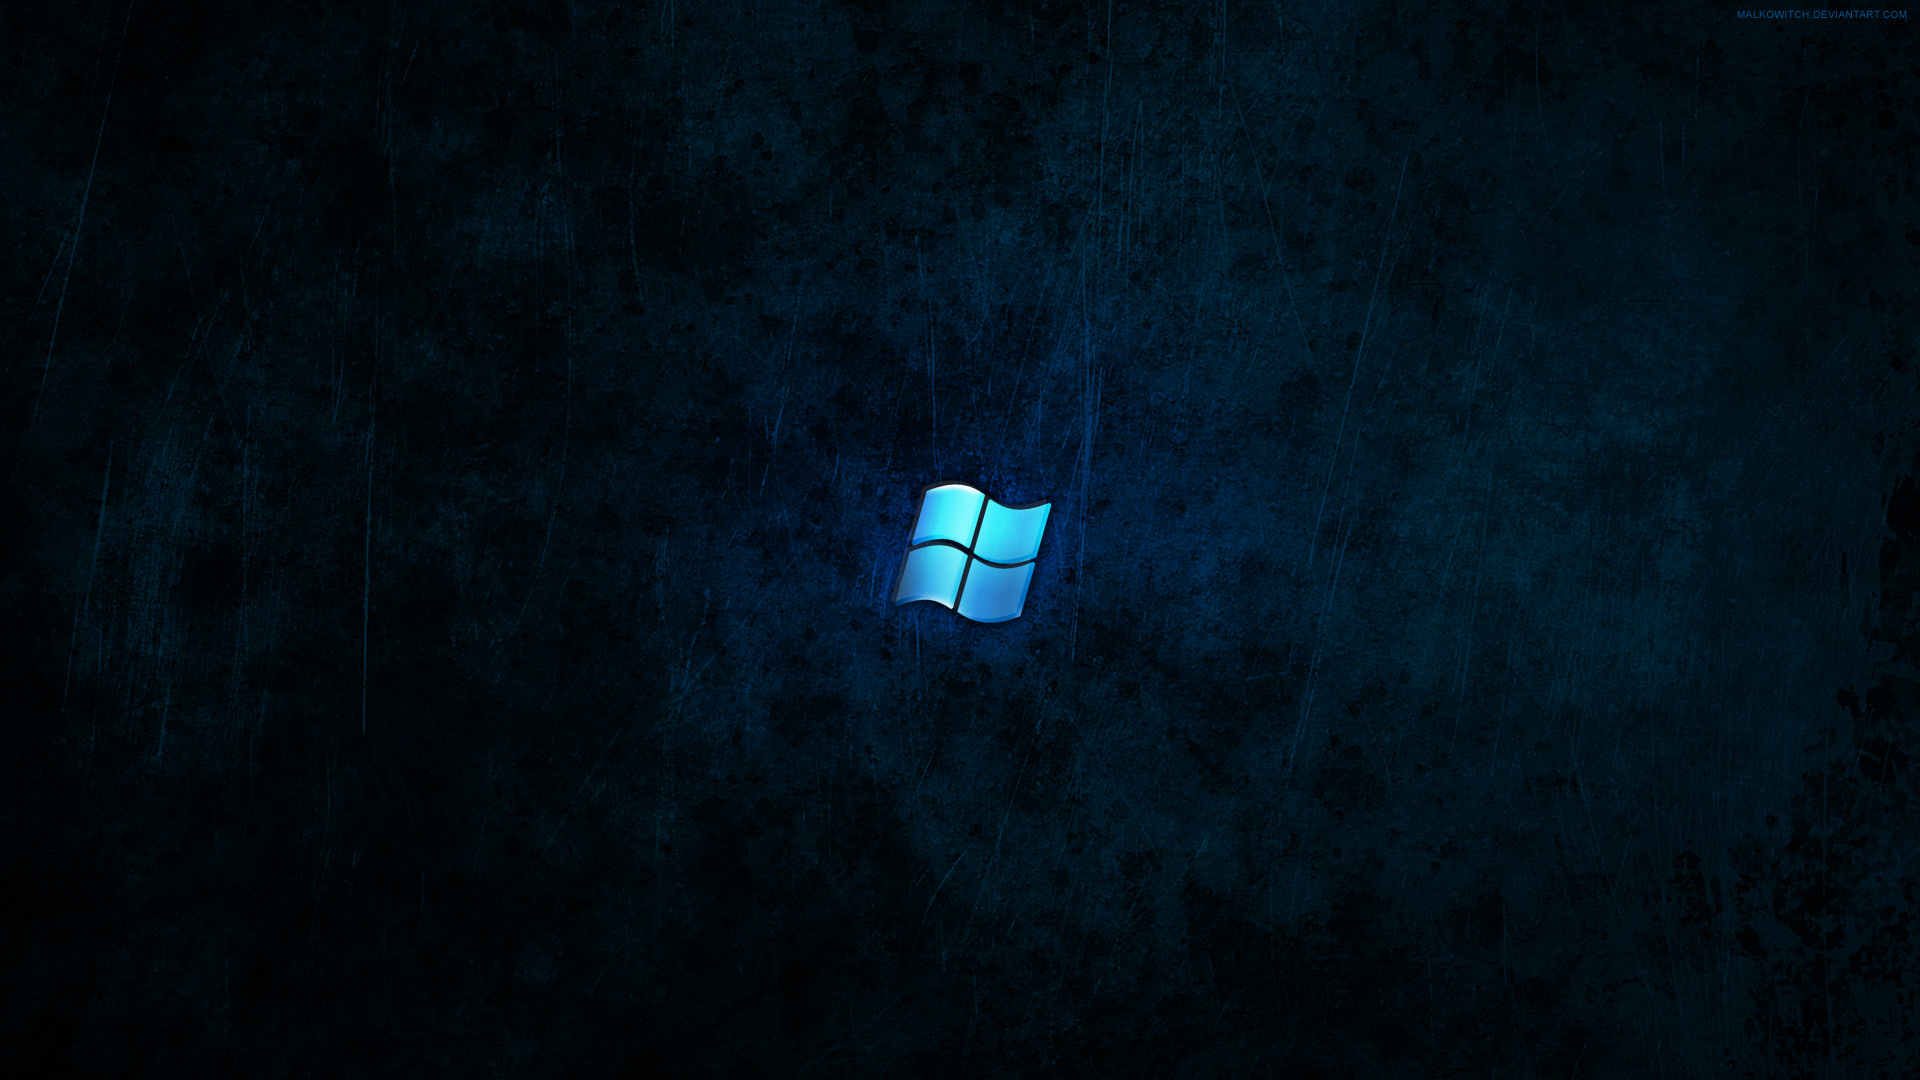 Windows Dark Blue Wallpaper By Malkowitch On DeviantArt - Blue